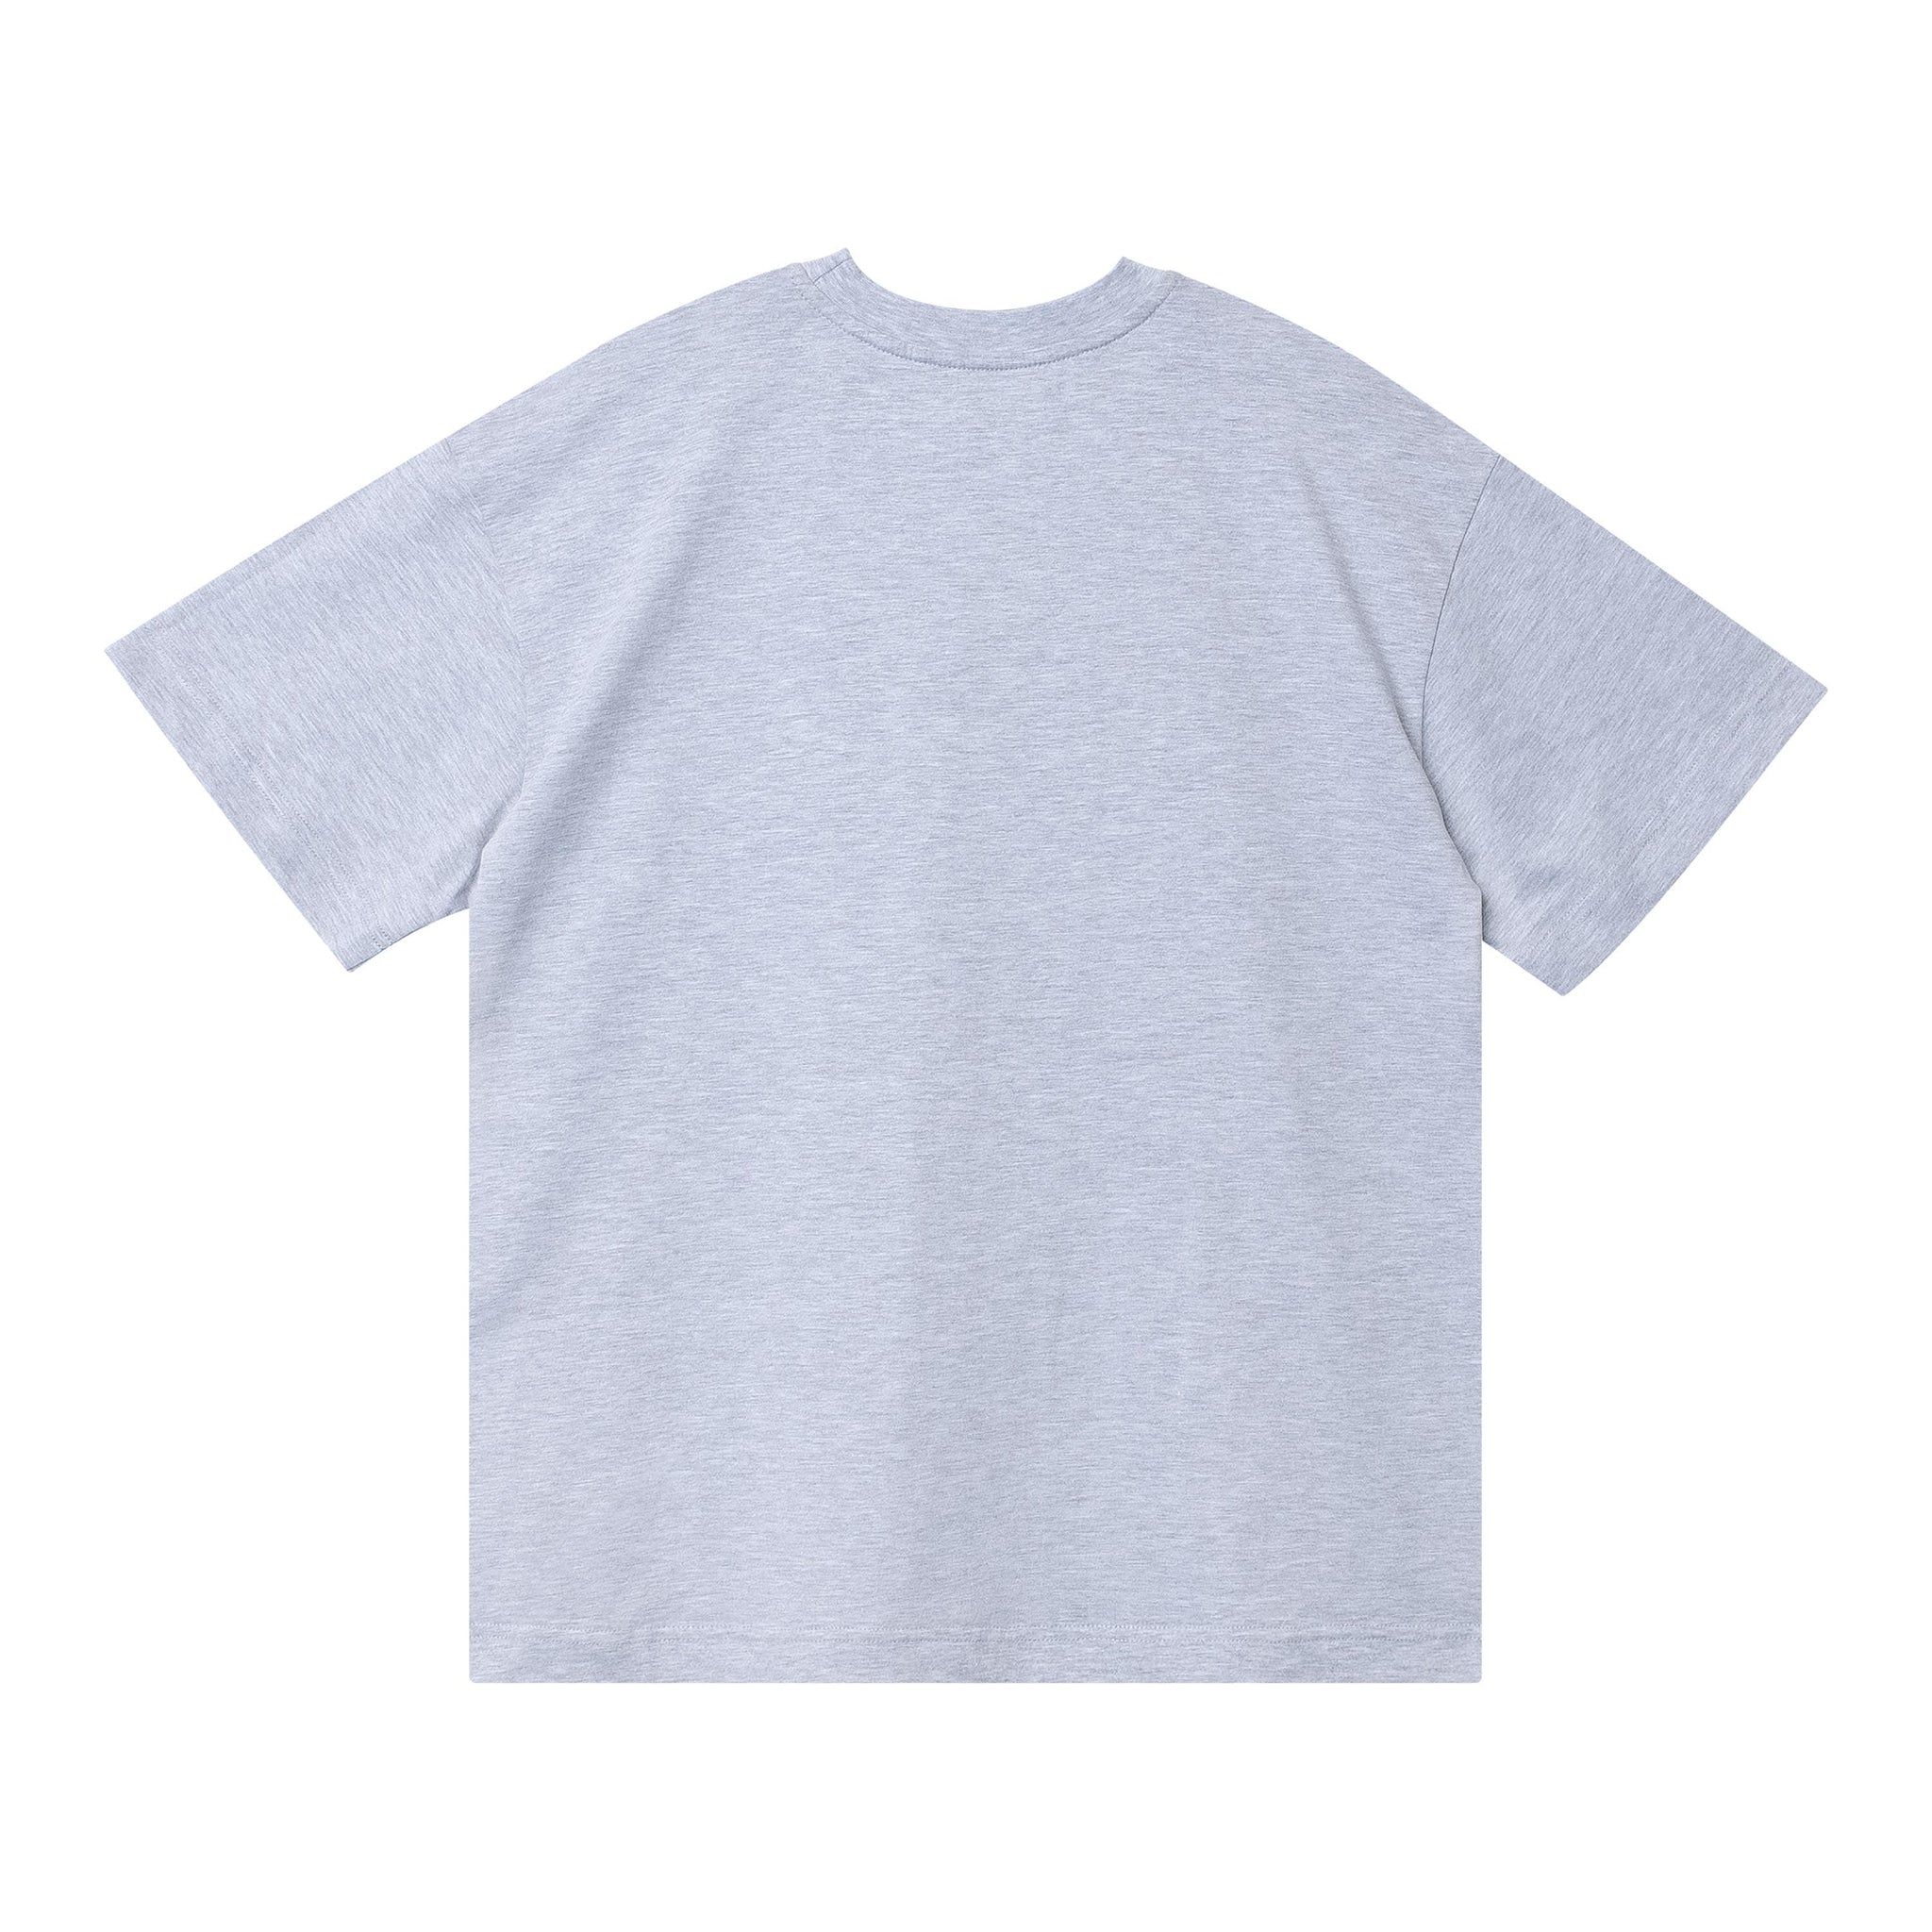 Mallboyz Grey T-Shirt